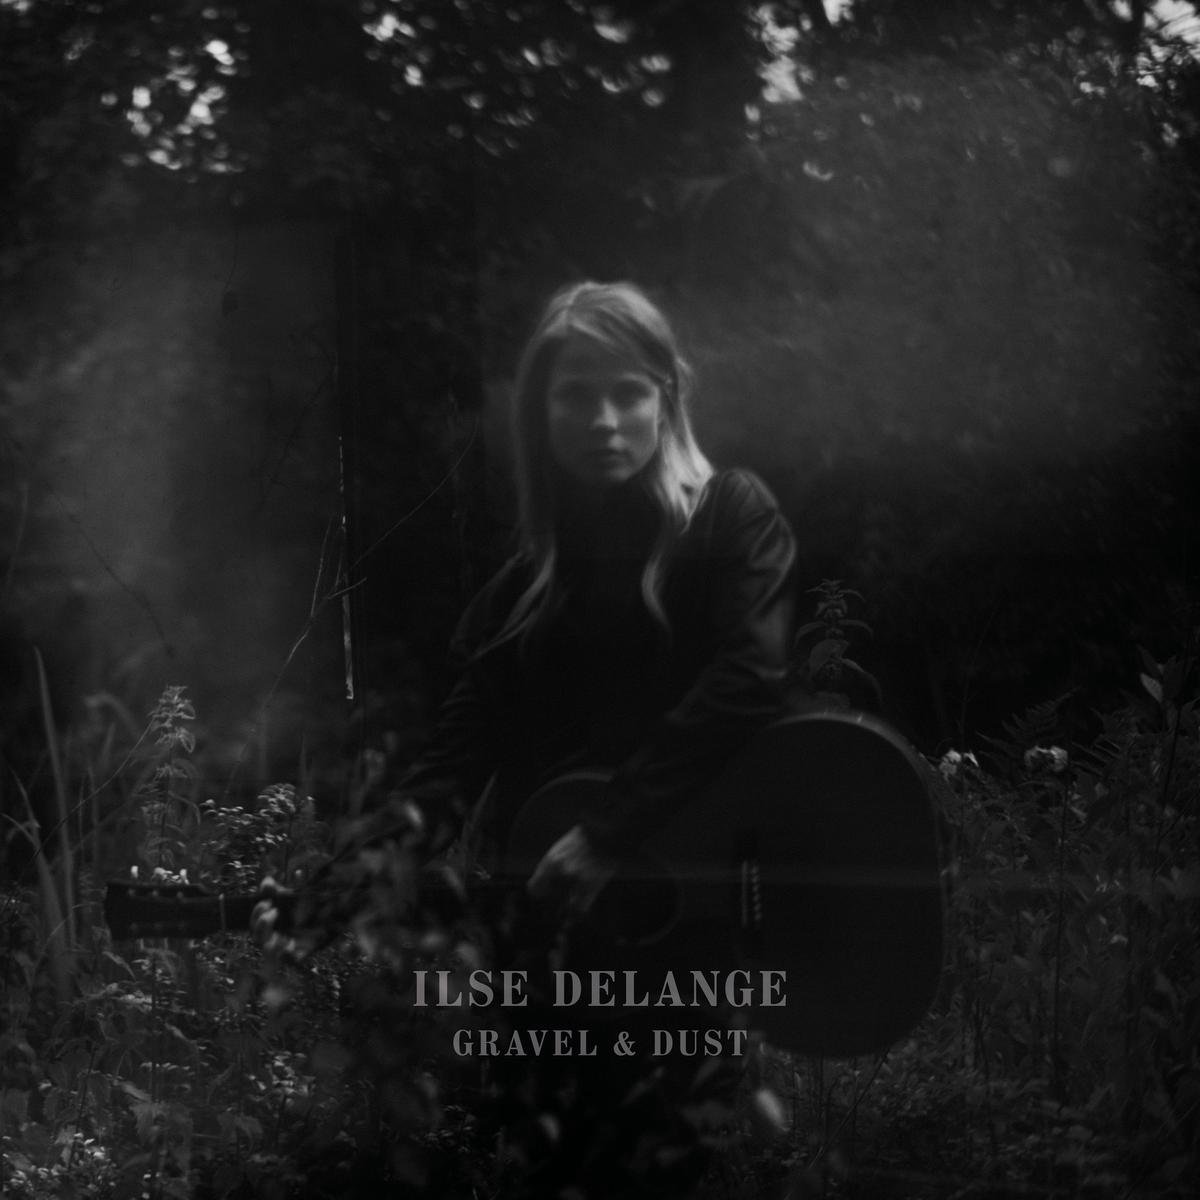 Gravel & Dust (Special Edition) - Ilse DeLange